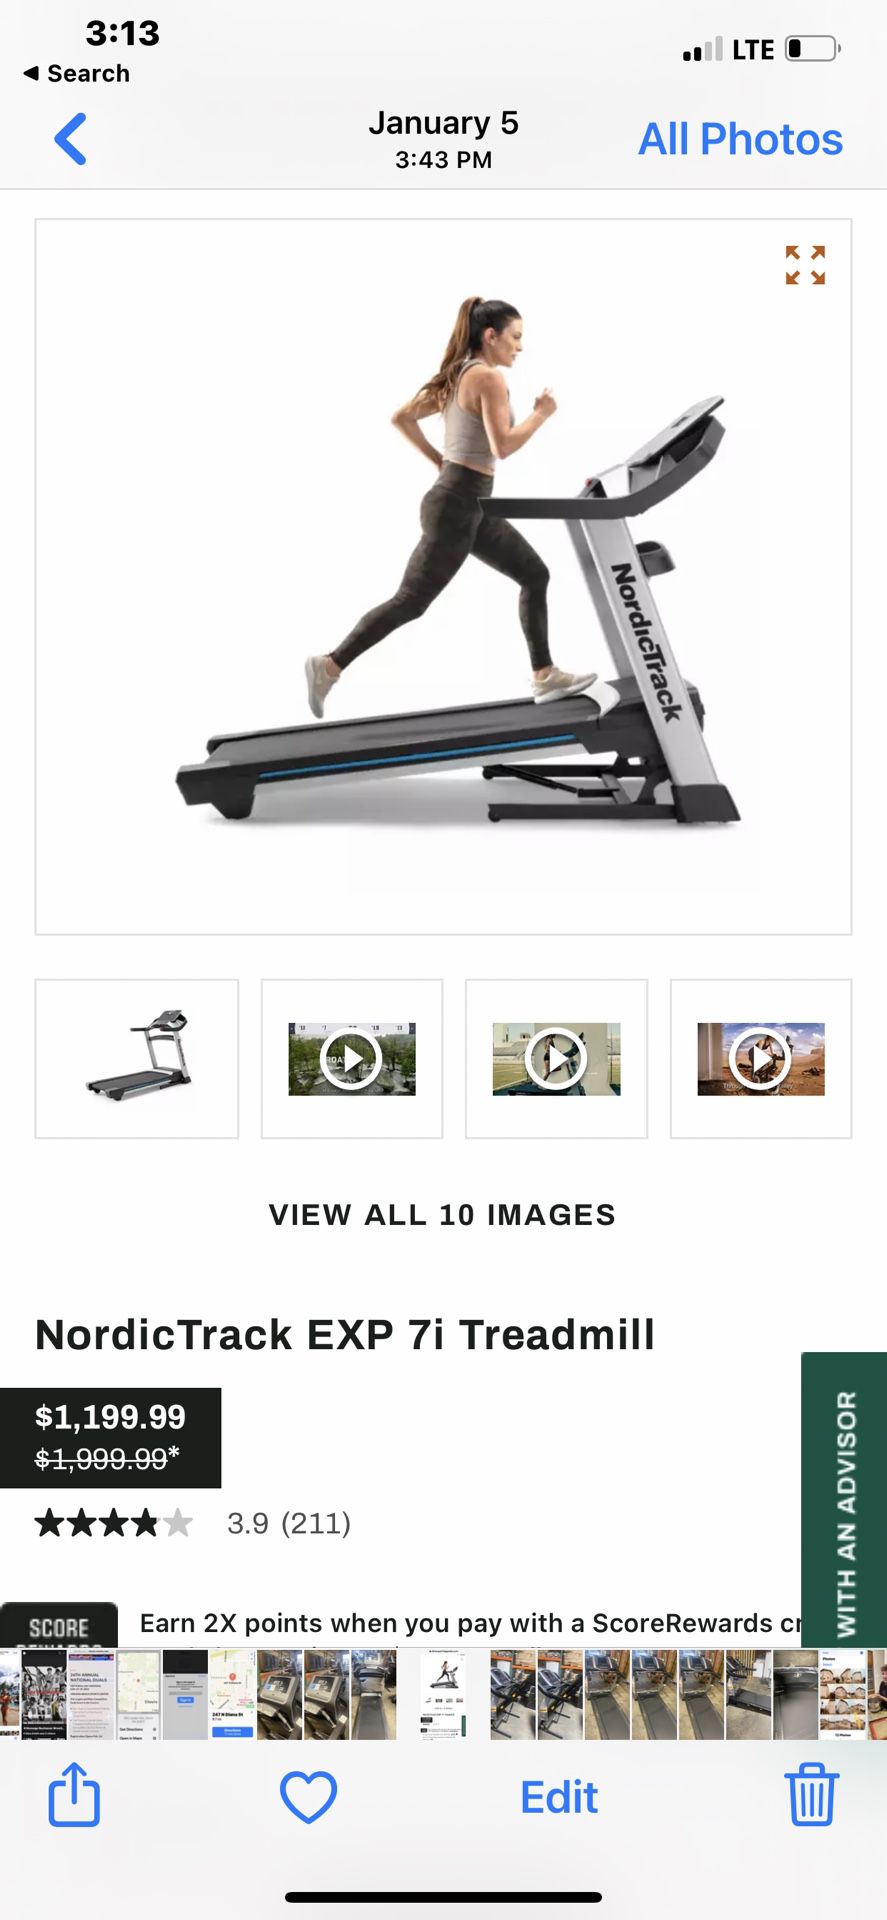 Nordictrack 7i Treadmill